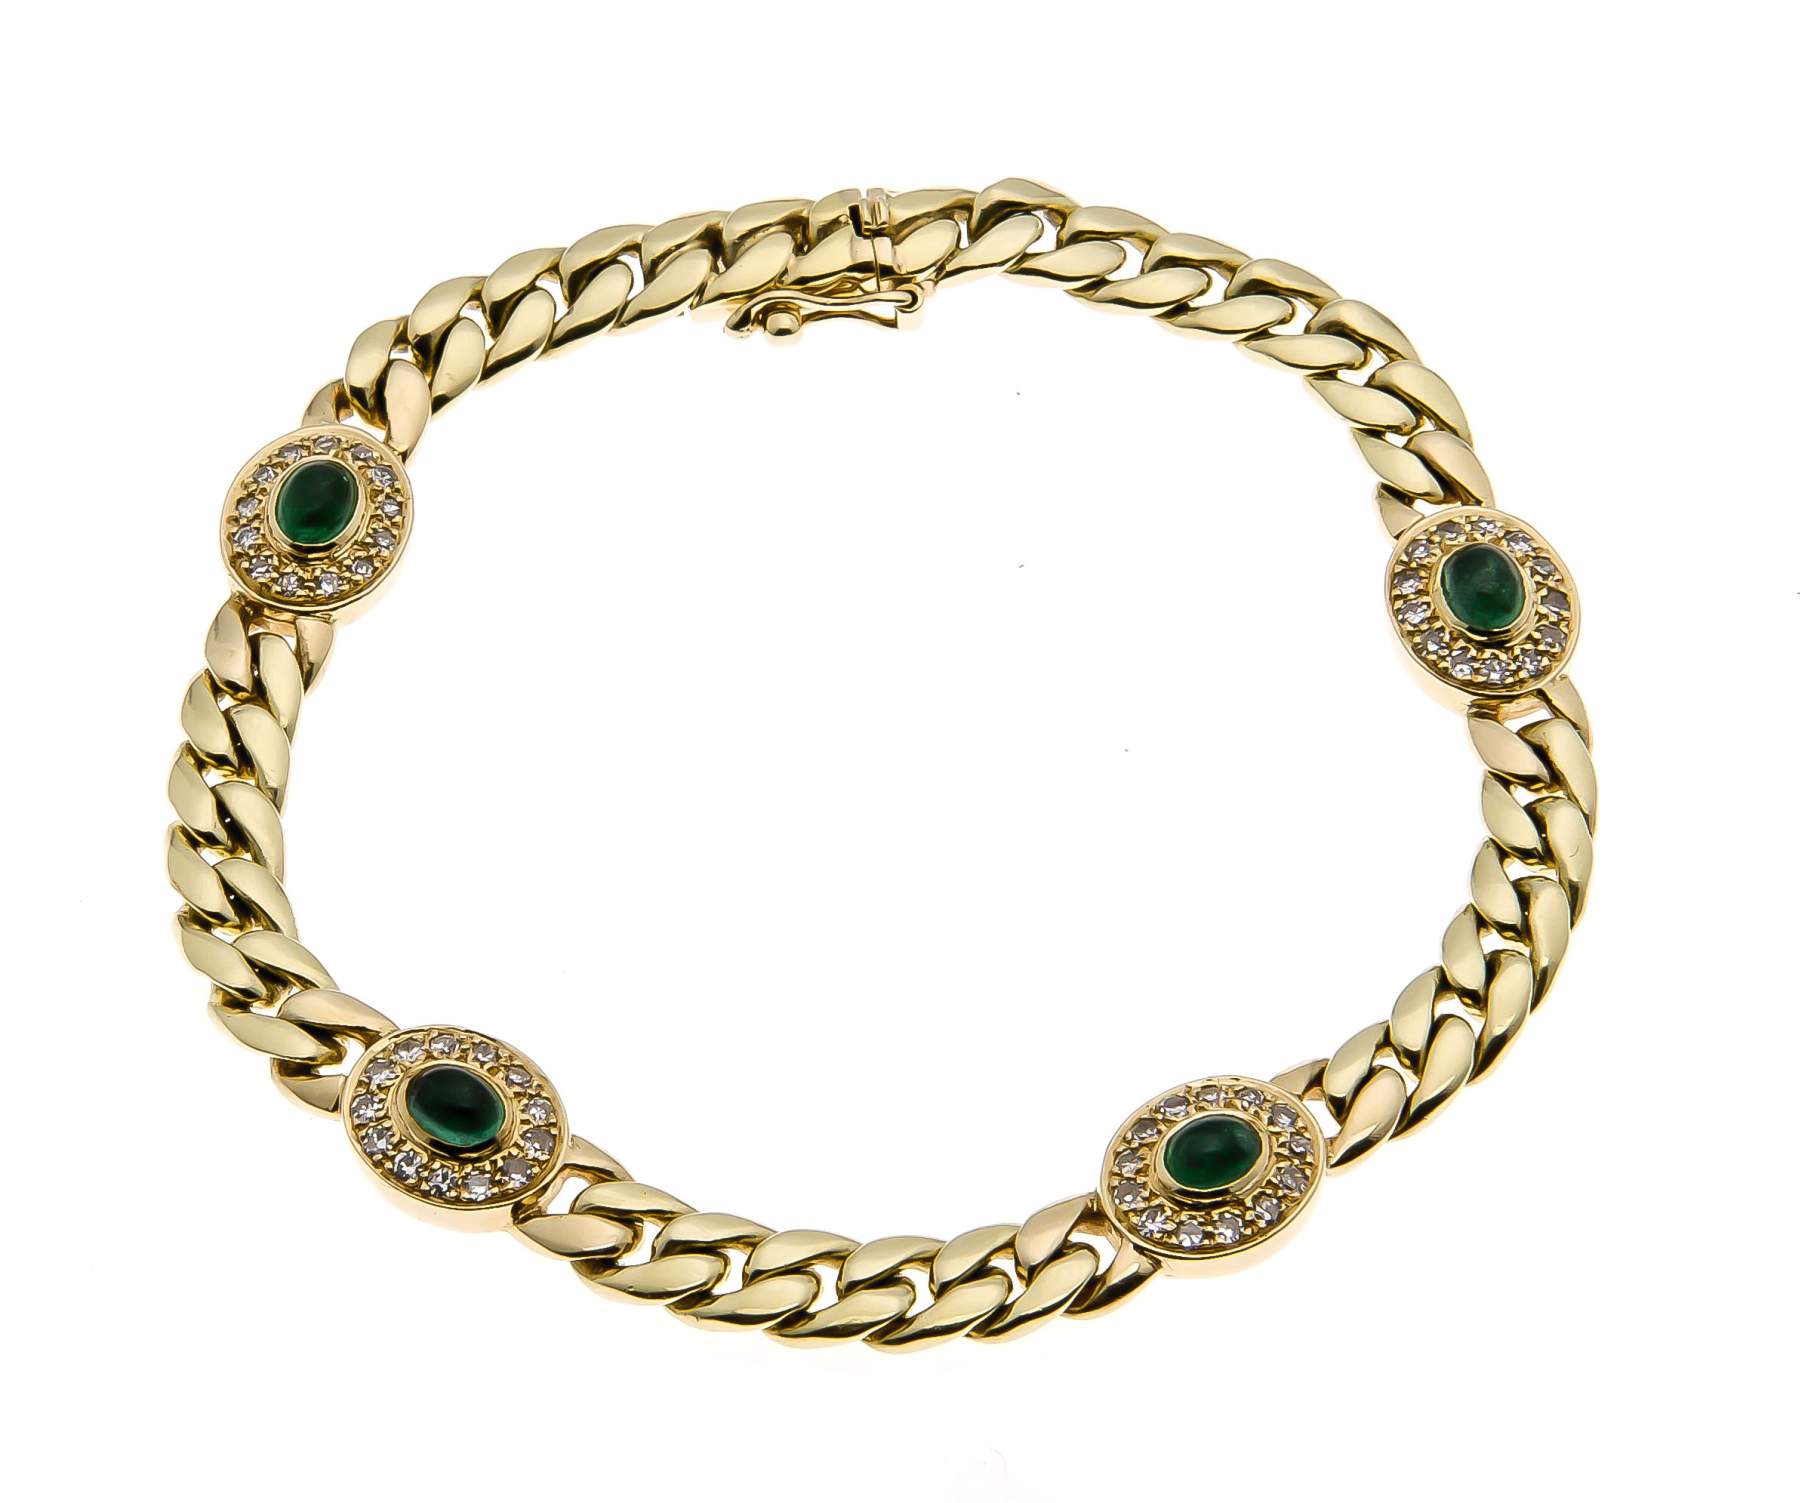 Smaragd-Brillant-Armband GG 750/000 mit 4 feinen ovalen Smaragdcabochons 5 x 3 mm, zus.1,27 ct in